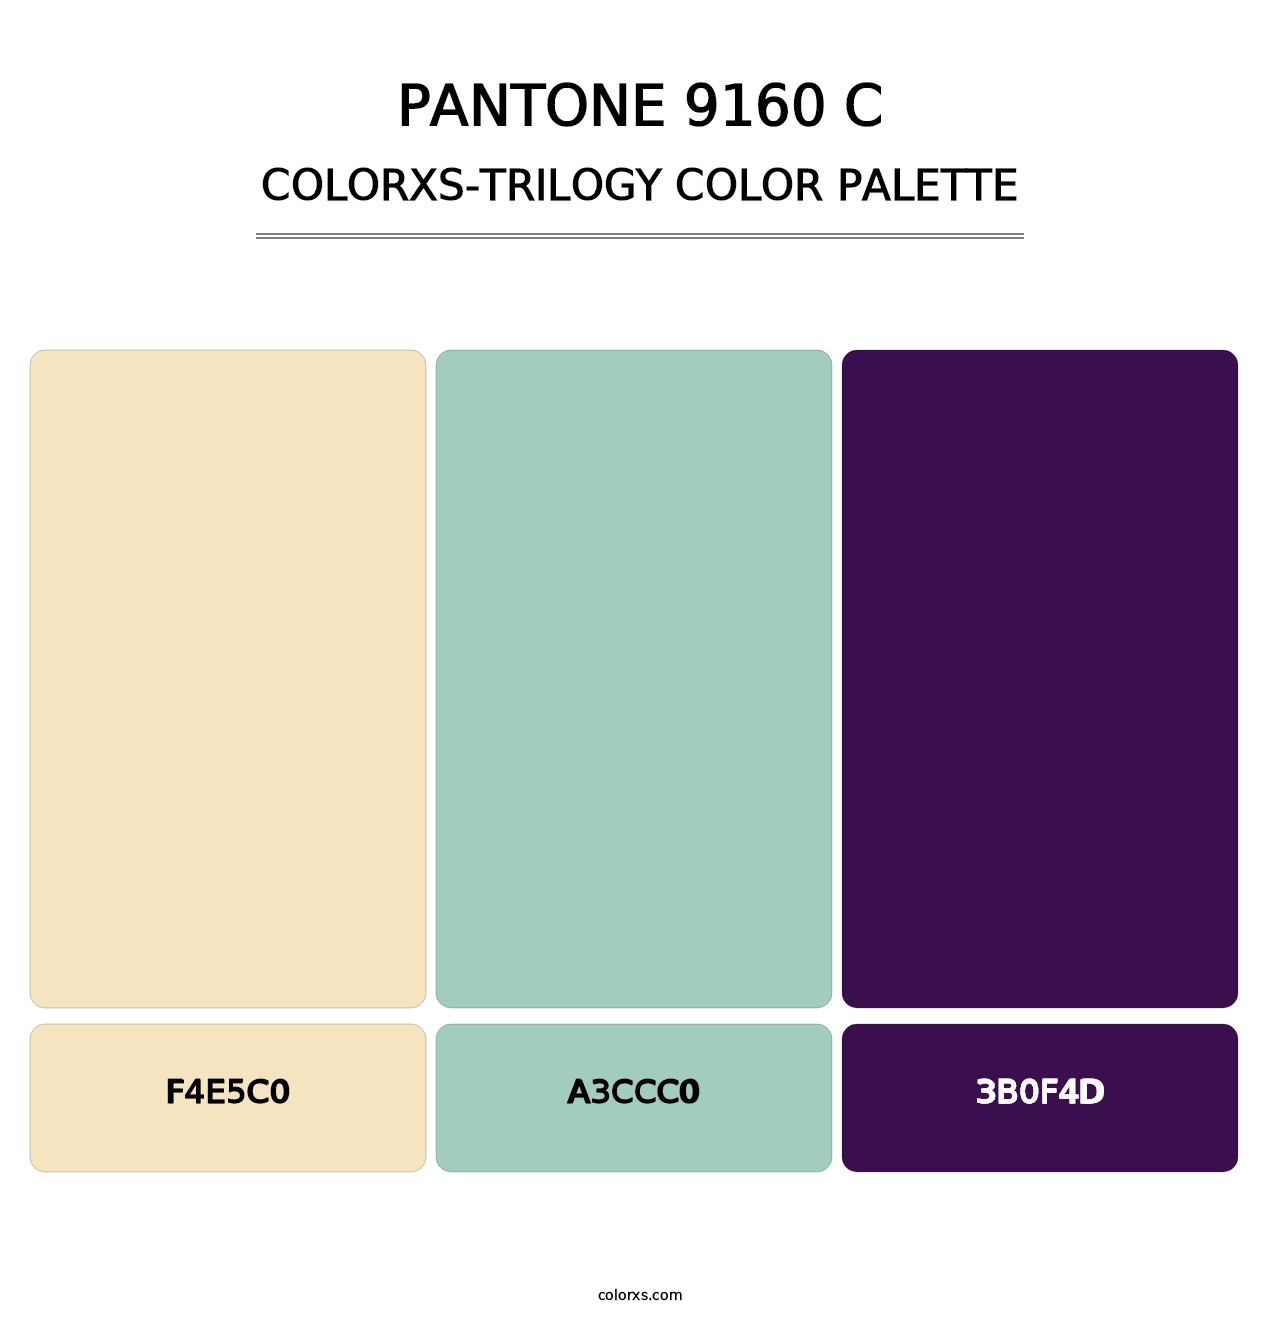 PANTONE 9160 C - Colorxs Trilogy Palette